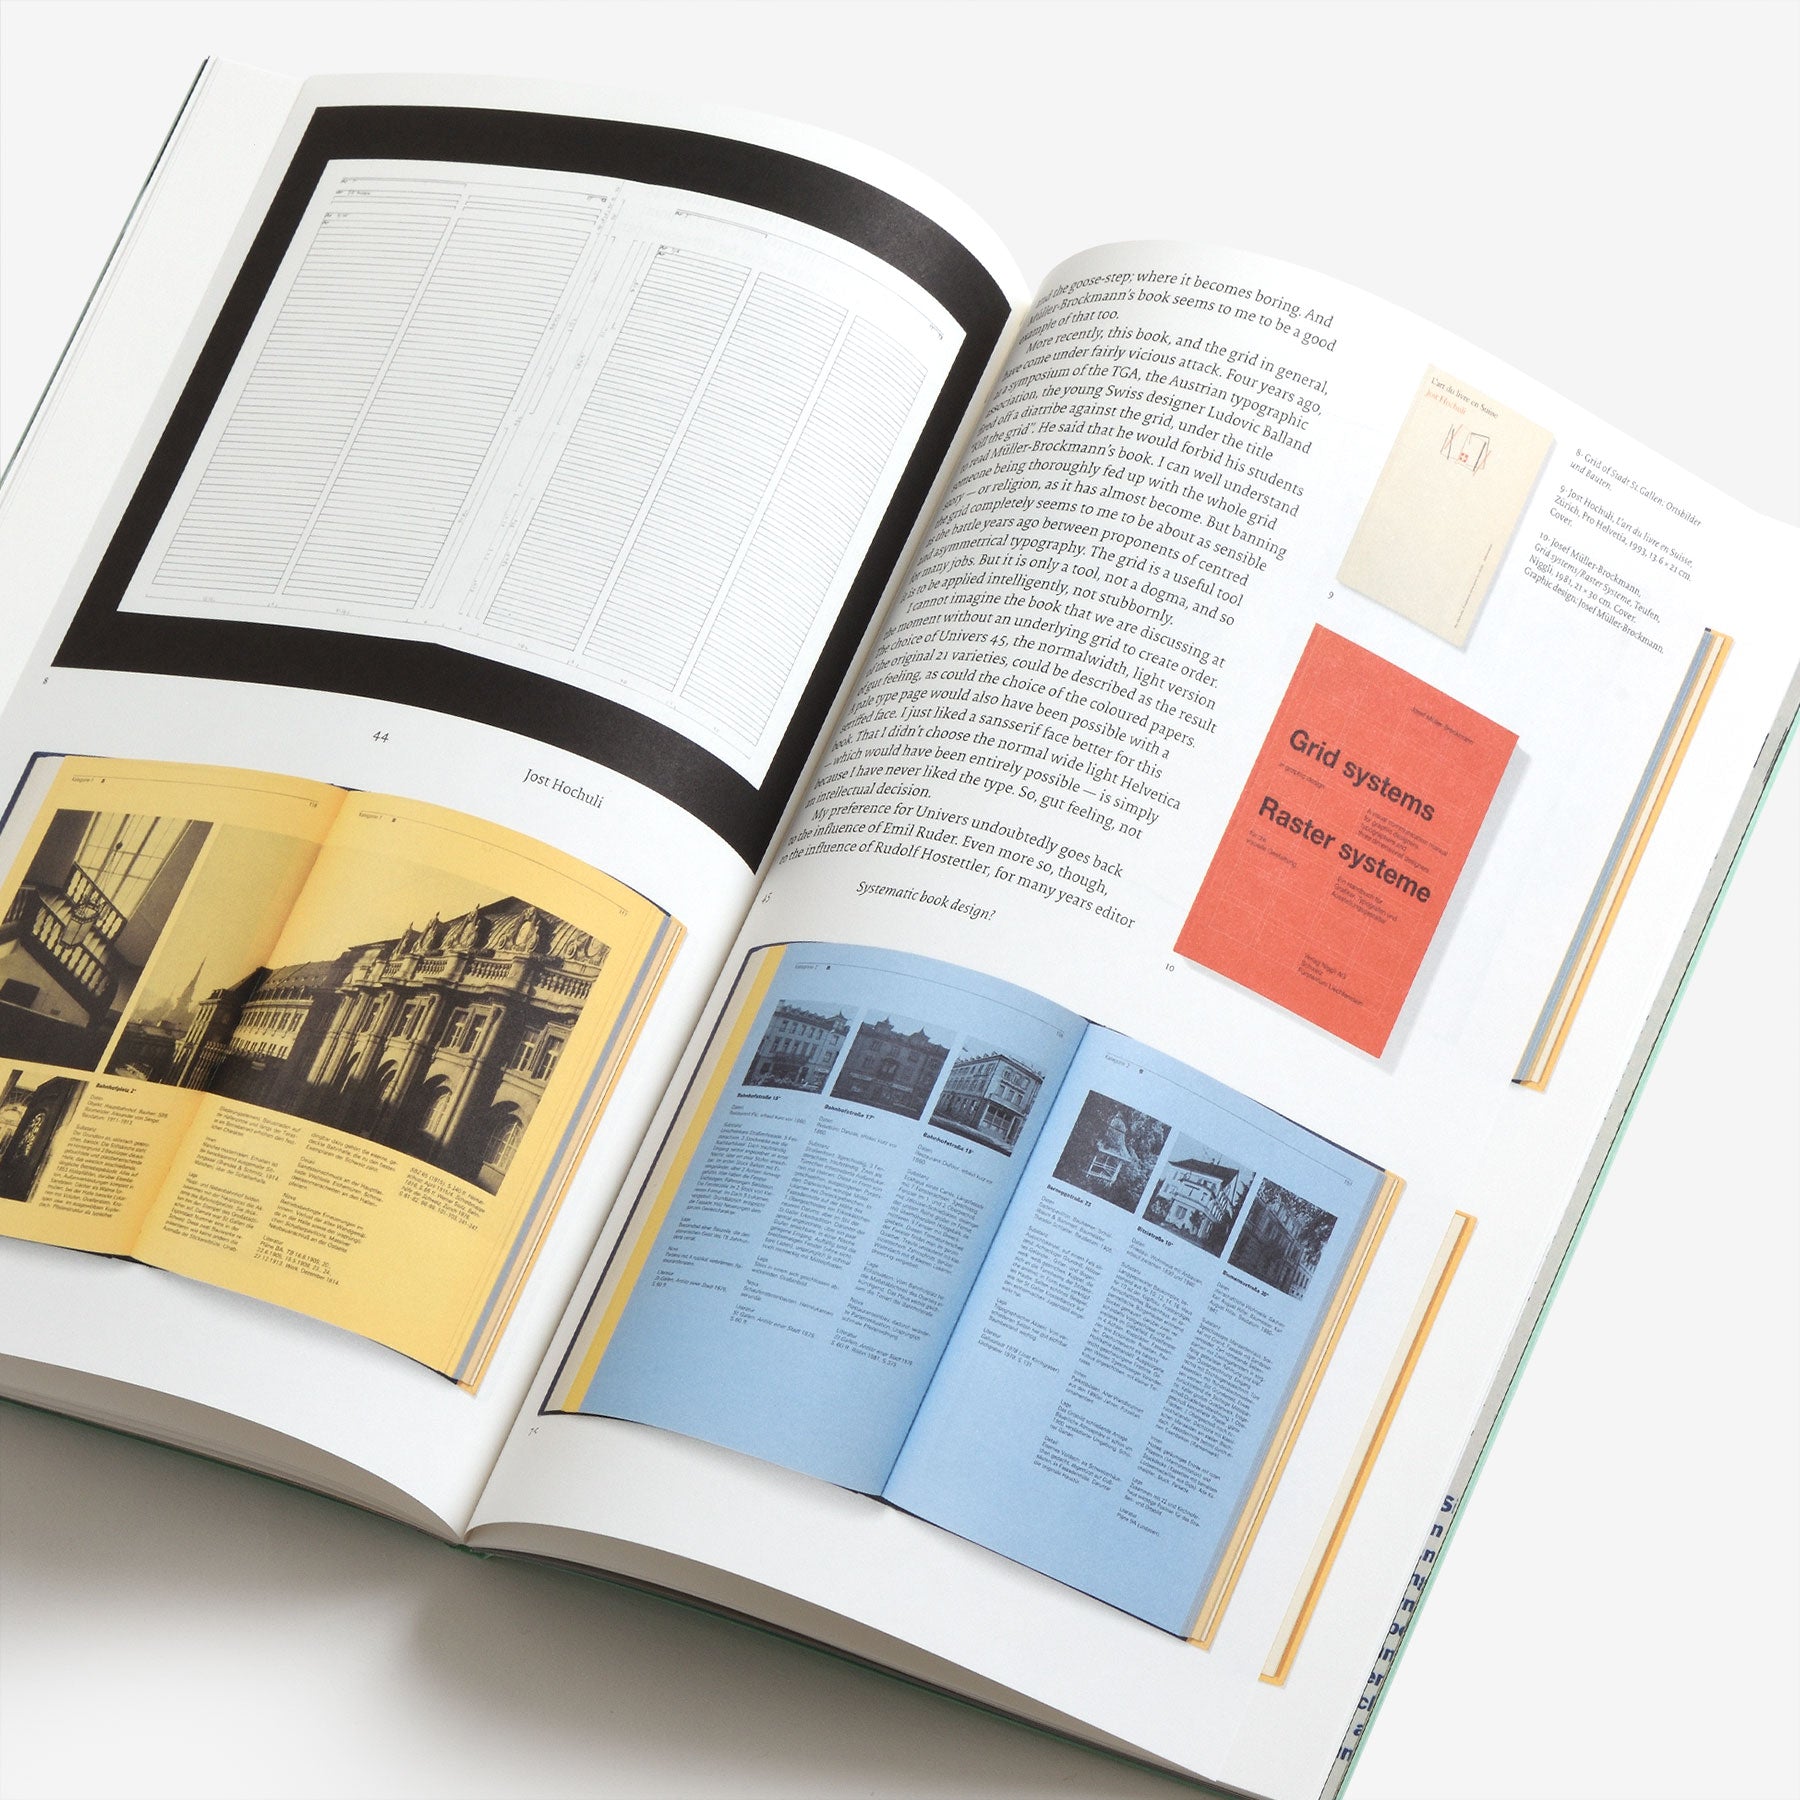 Jost Hochuli: Systematic Book Design?